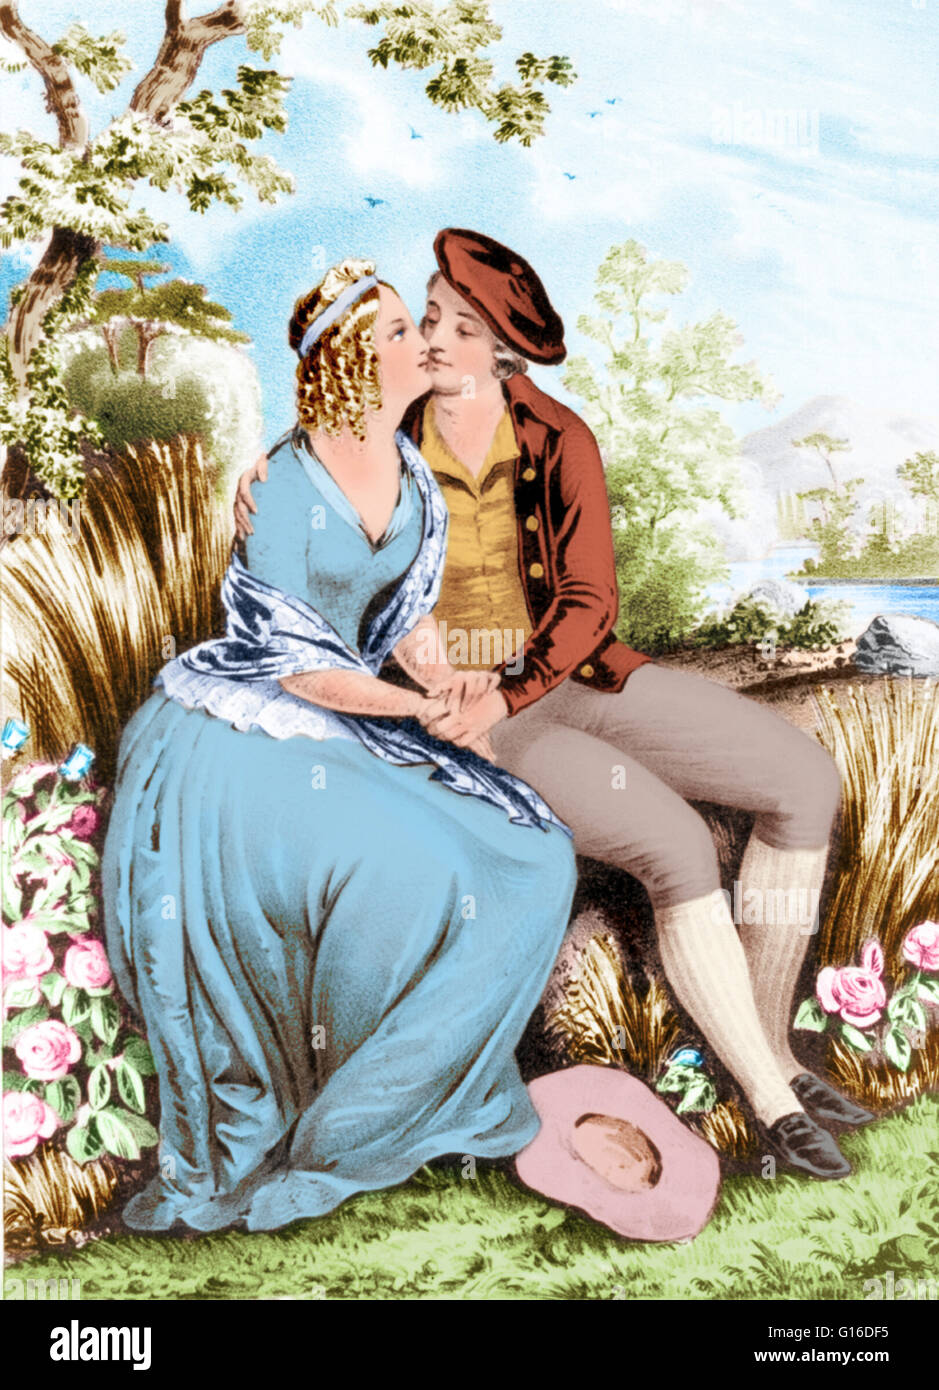 Lithographie de Robert Burns et Mary Campbell assis dans un décor boisé, tenant les mains, et s'embrassant. Robert Burns (Janvier 25, 1759 - Juillet 21, 1796) était un poète écossais et parolier. Il est largement considéré comme le poète national de l'Écosse et est celebra Banque D'Images